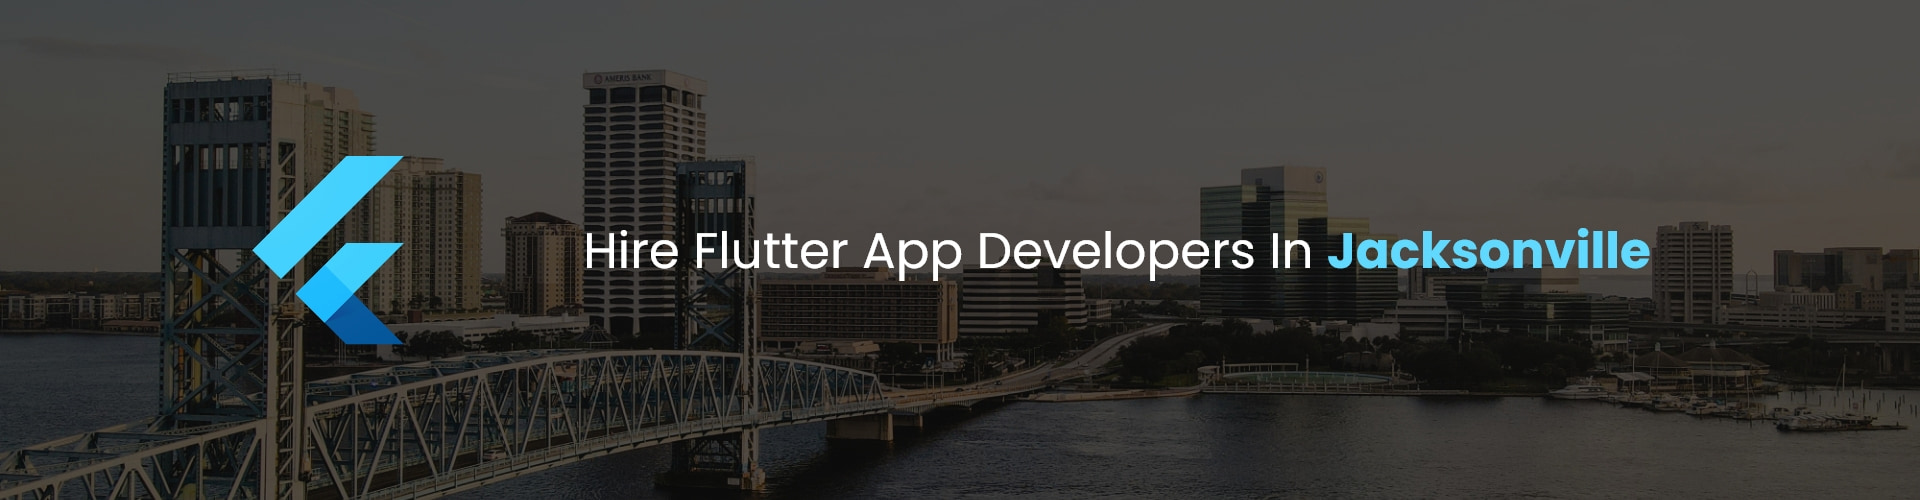 flutter app developers in jacksonville 